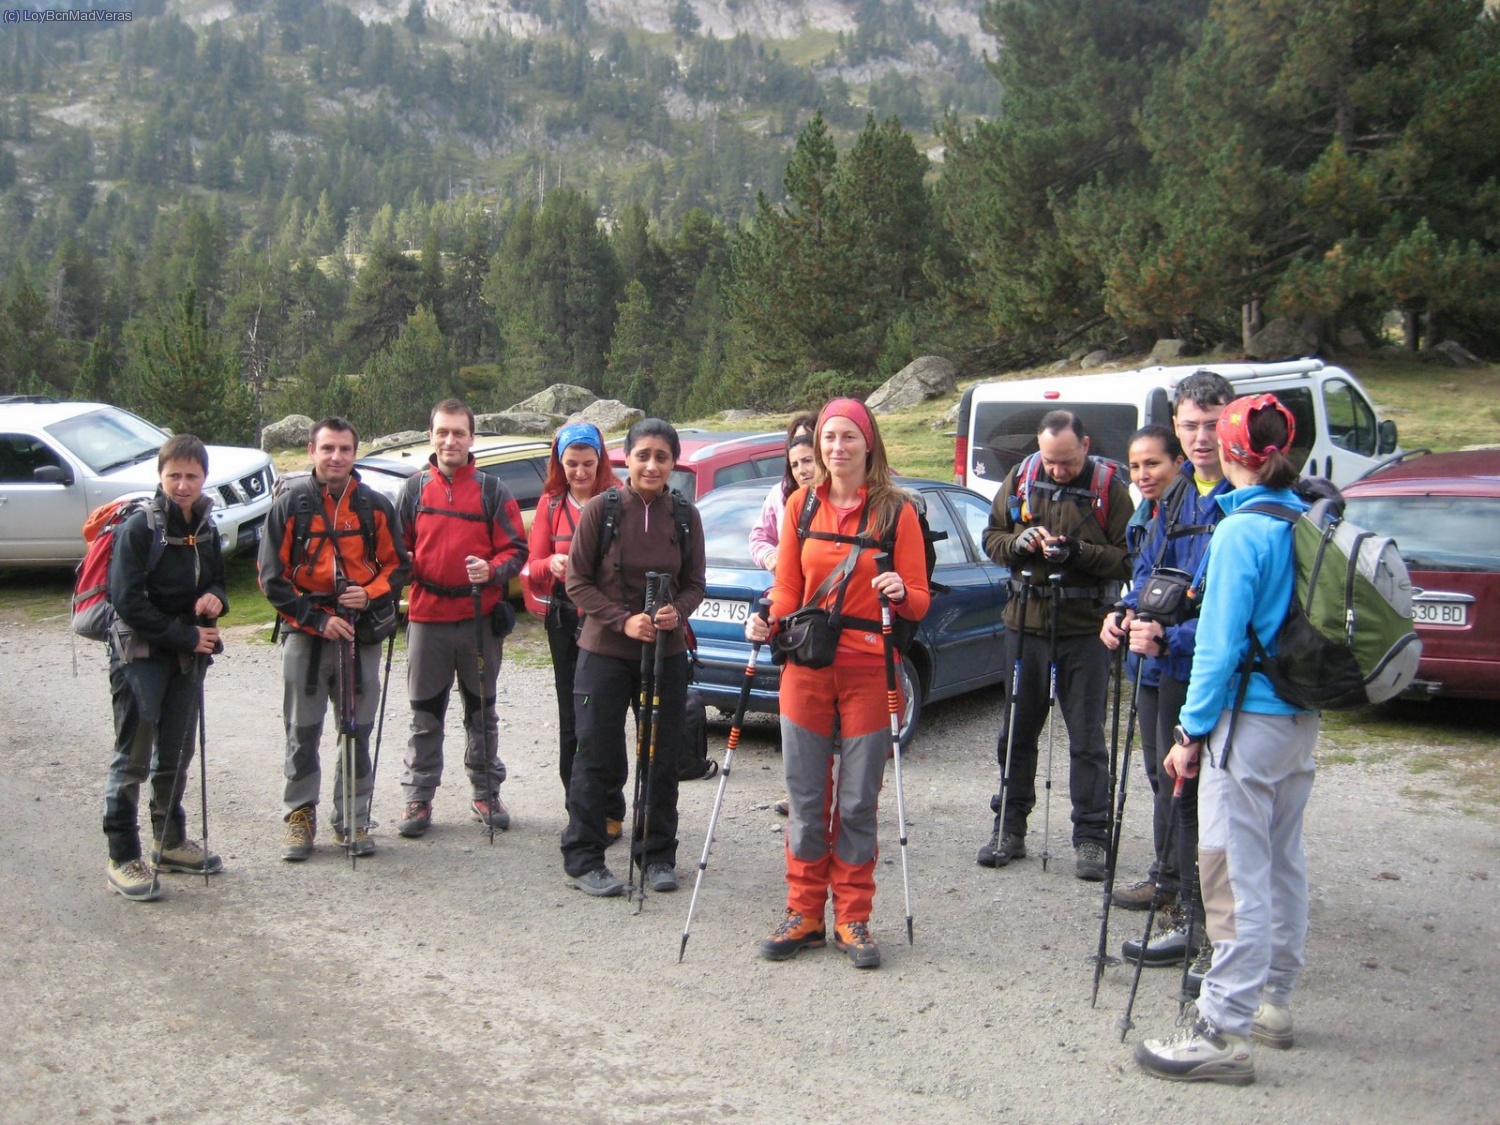 Junto con el grupo que subian al Pico de Aigualluts